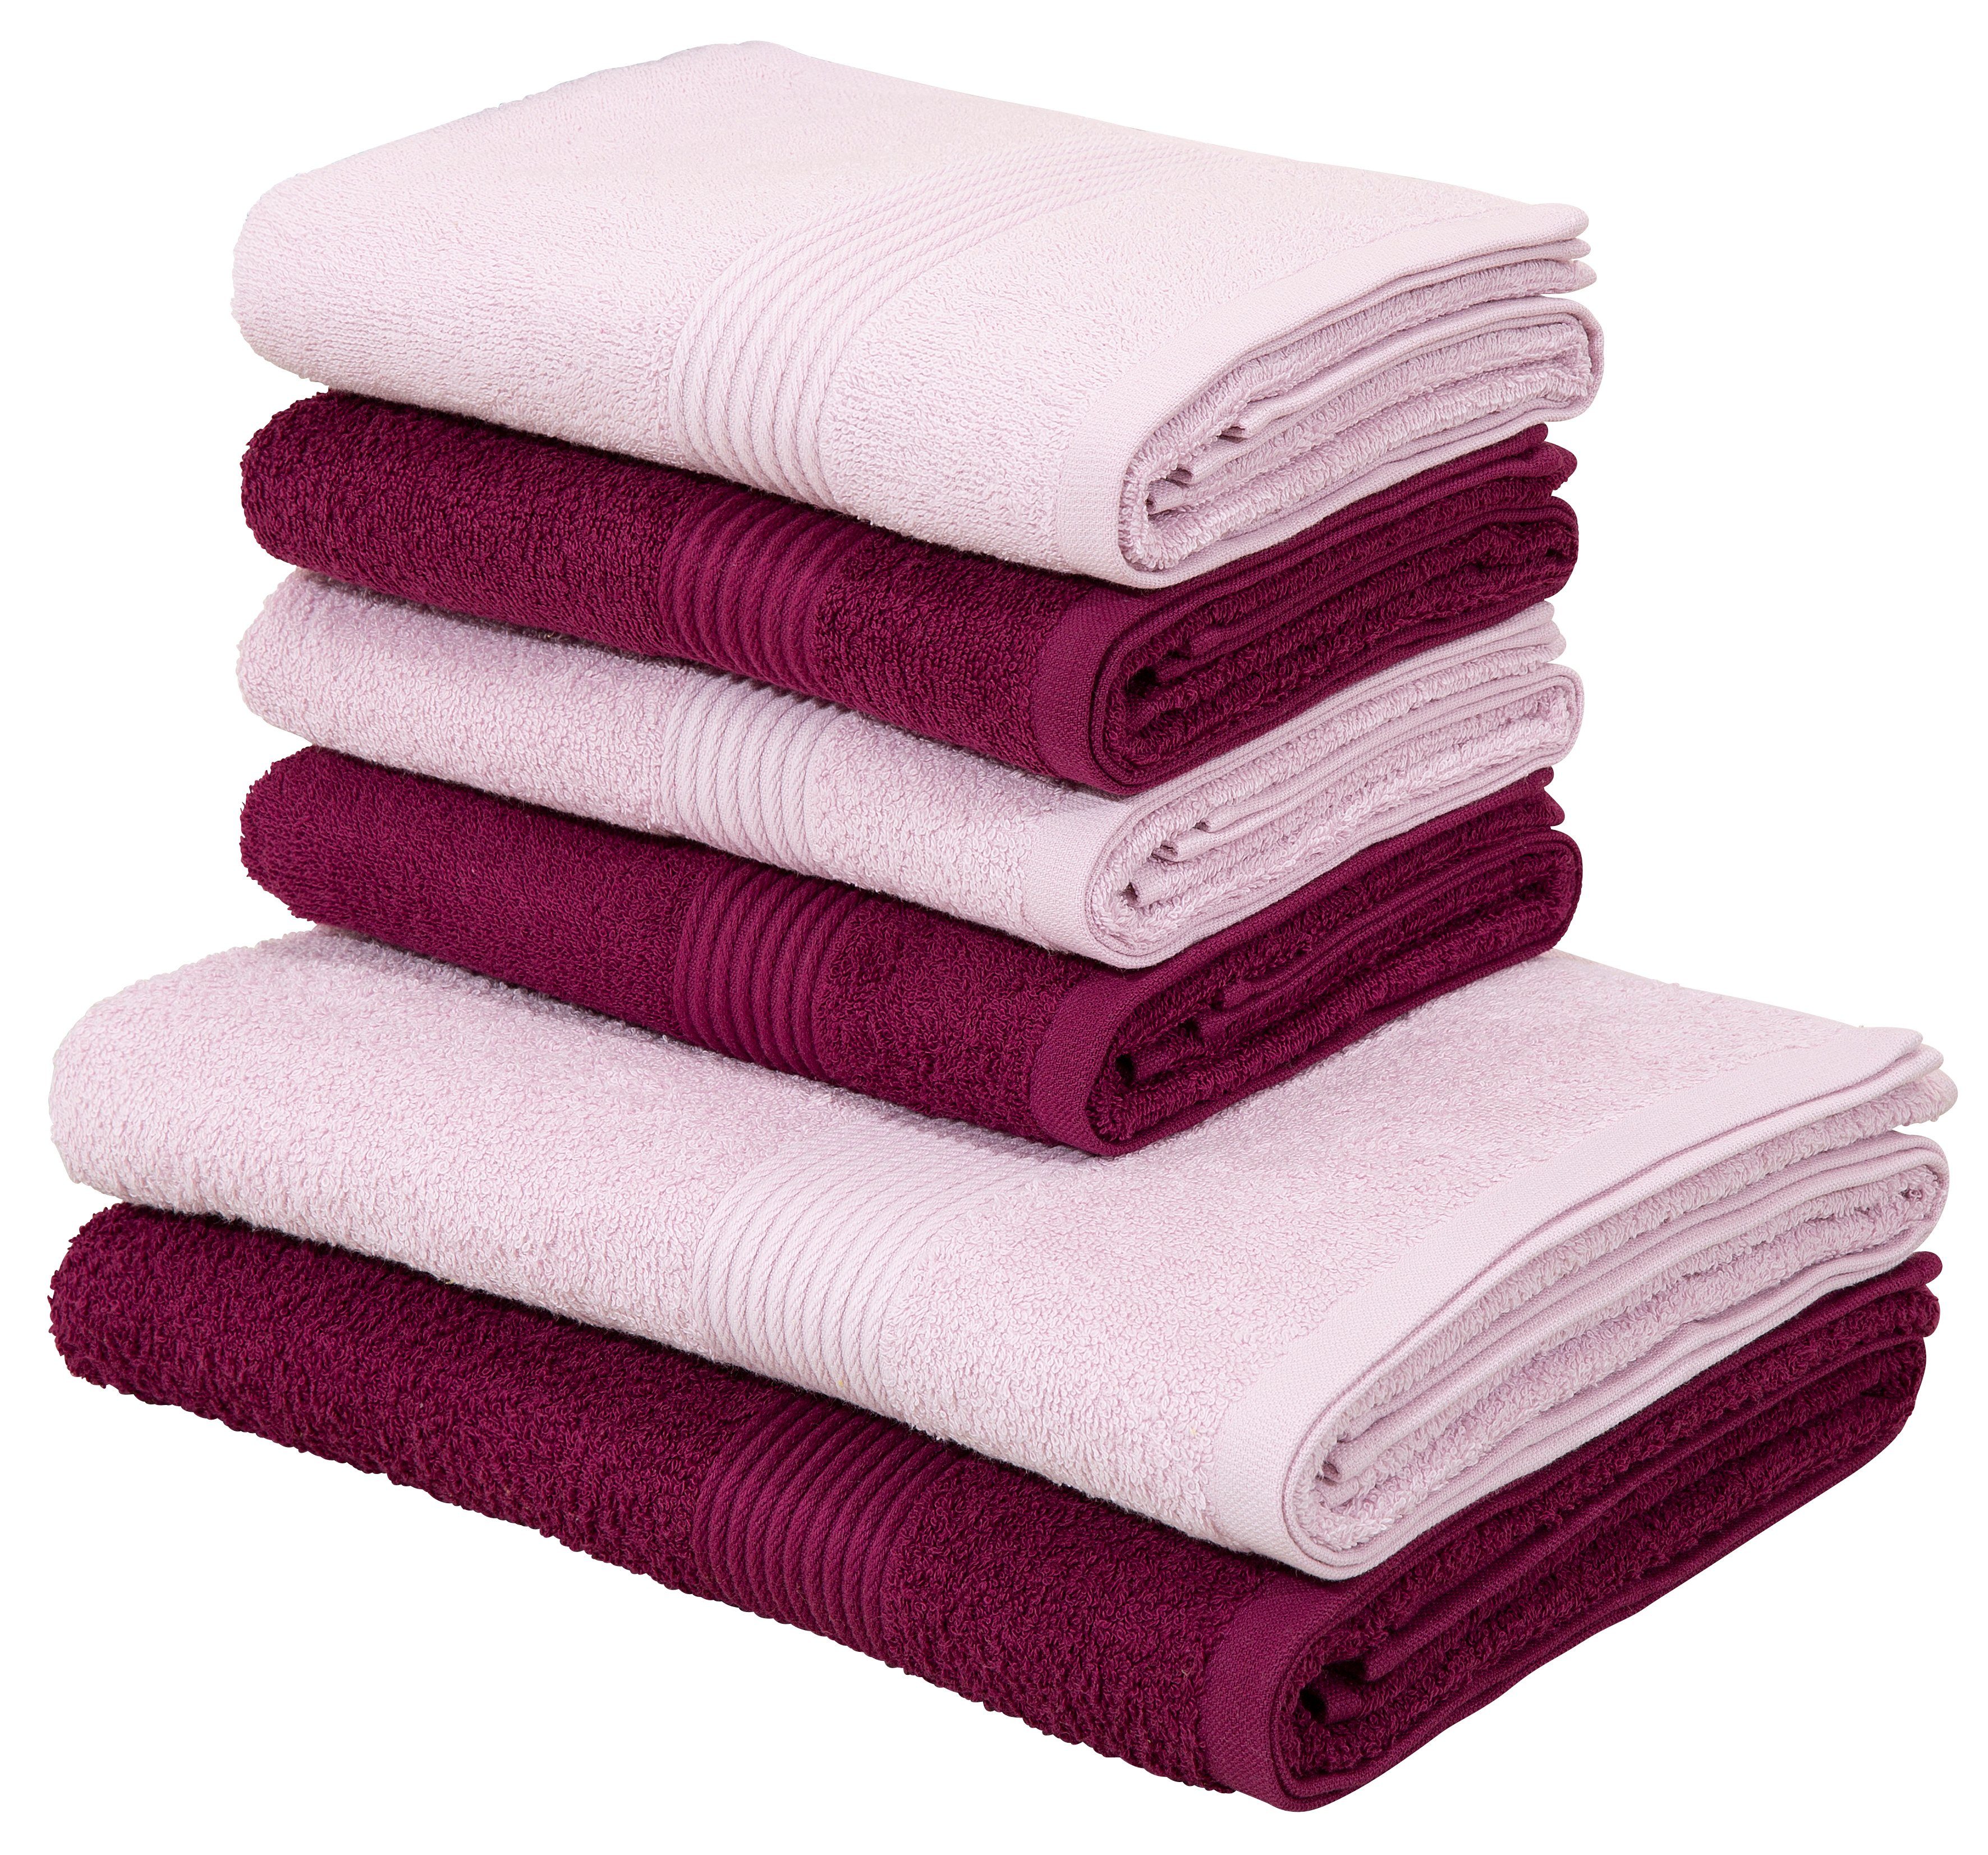 Handtuch-Set in lila online kaufen | OTTO